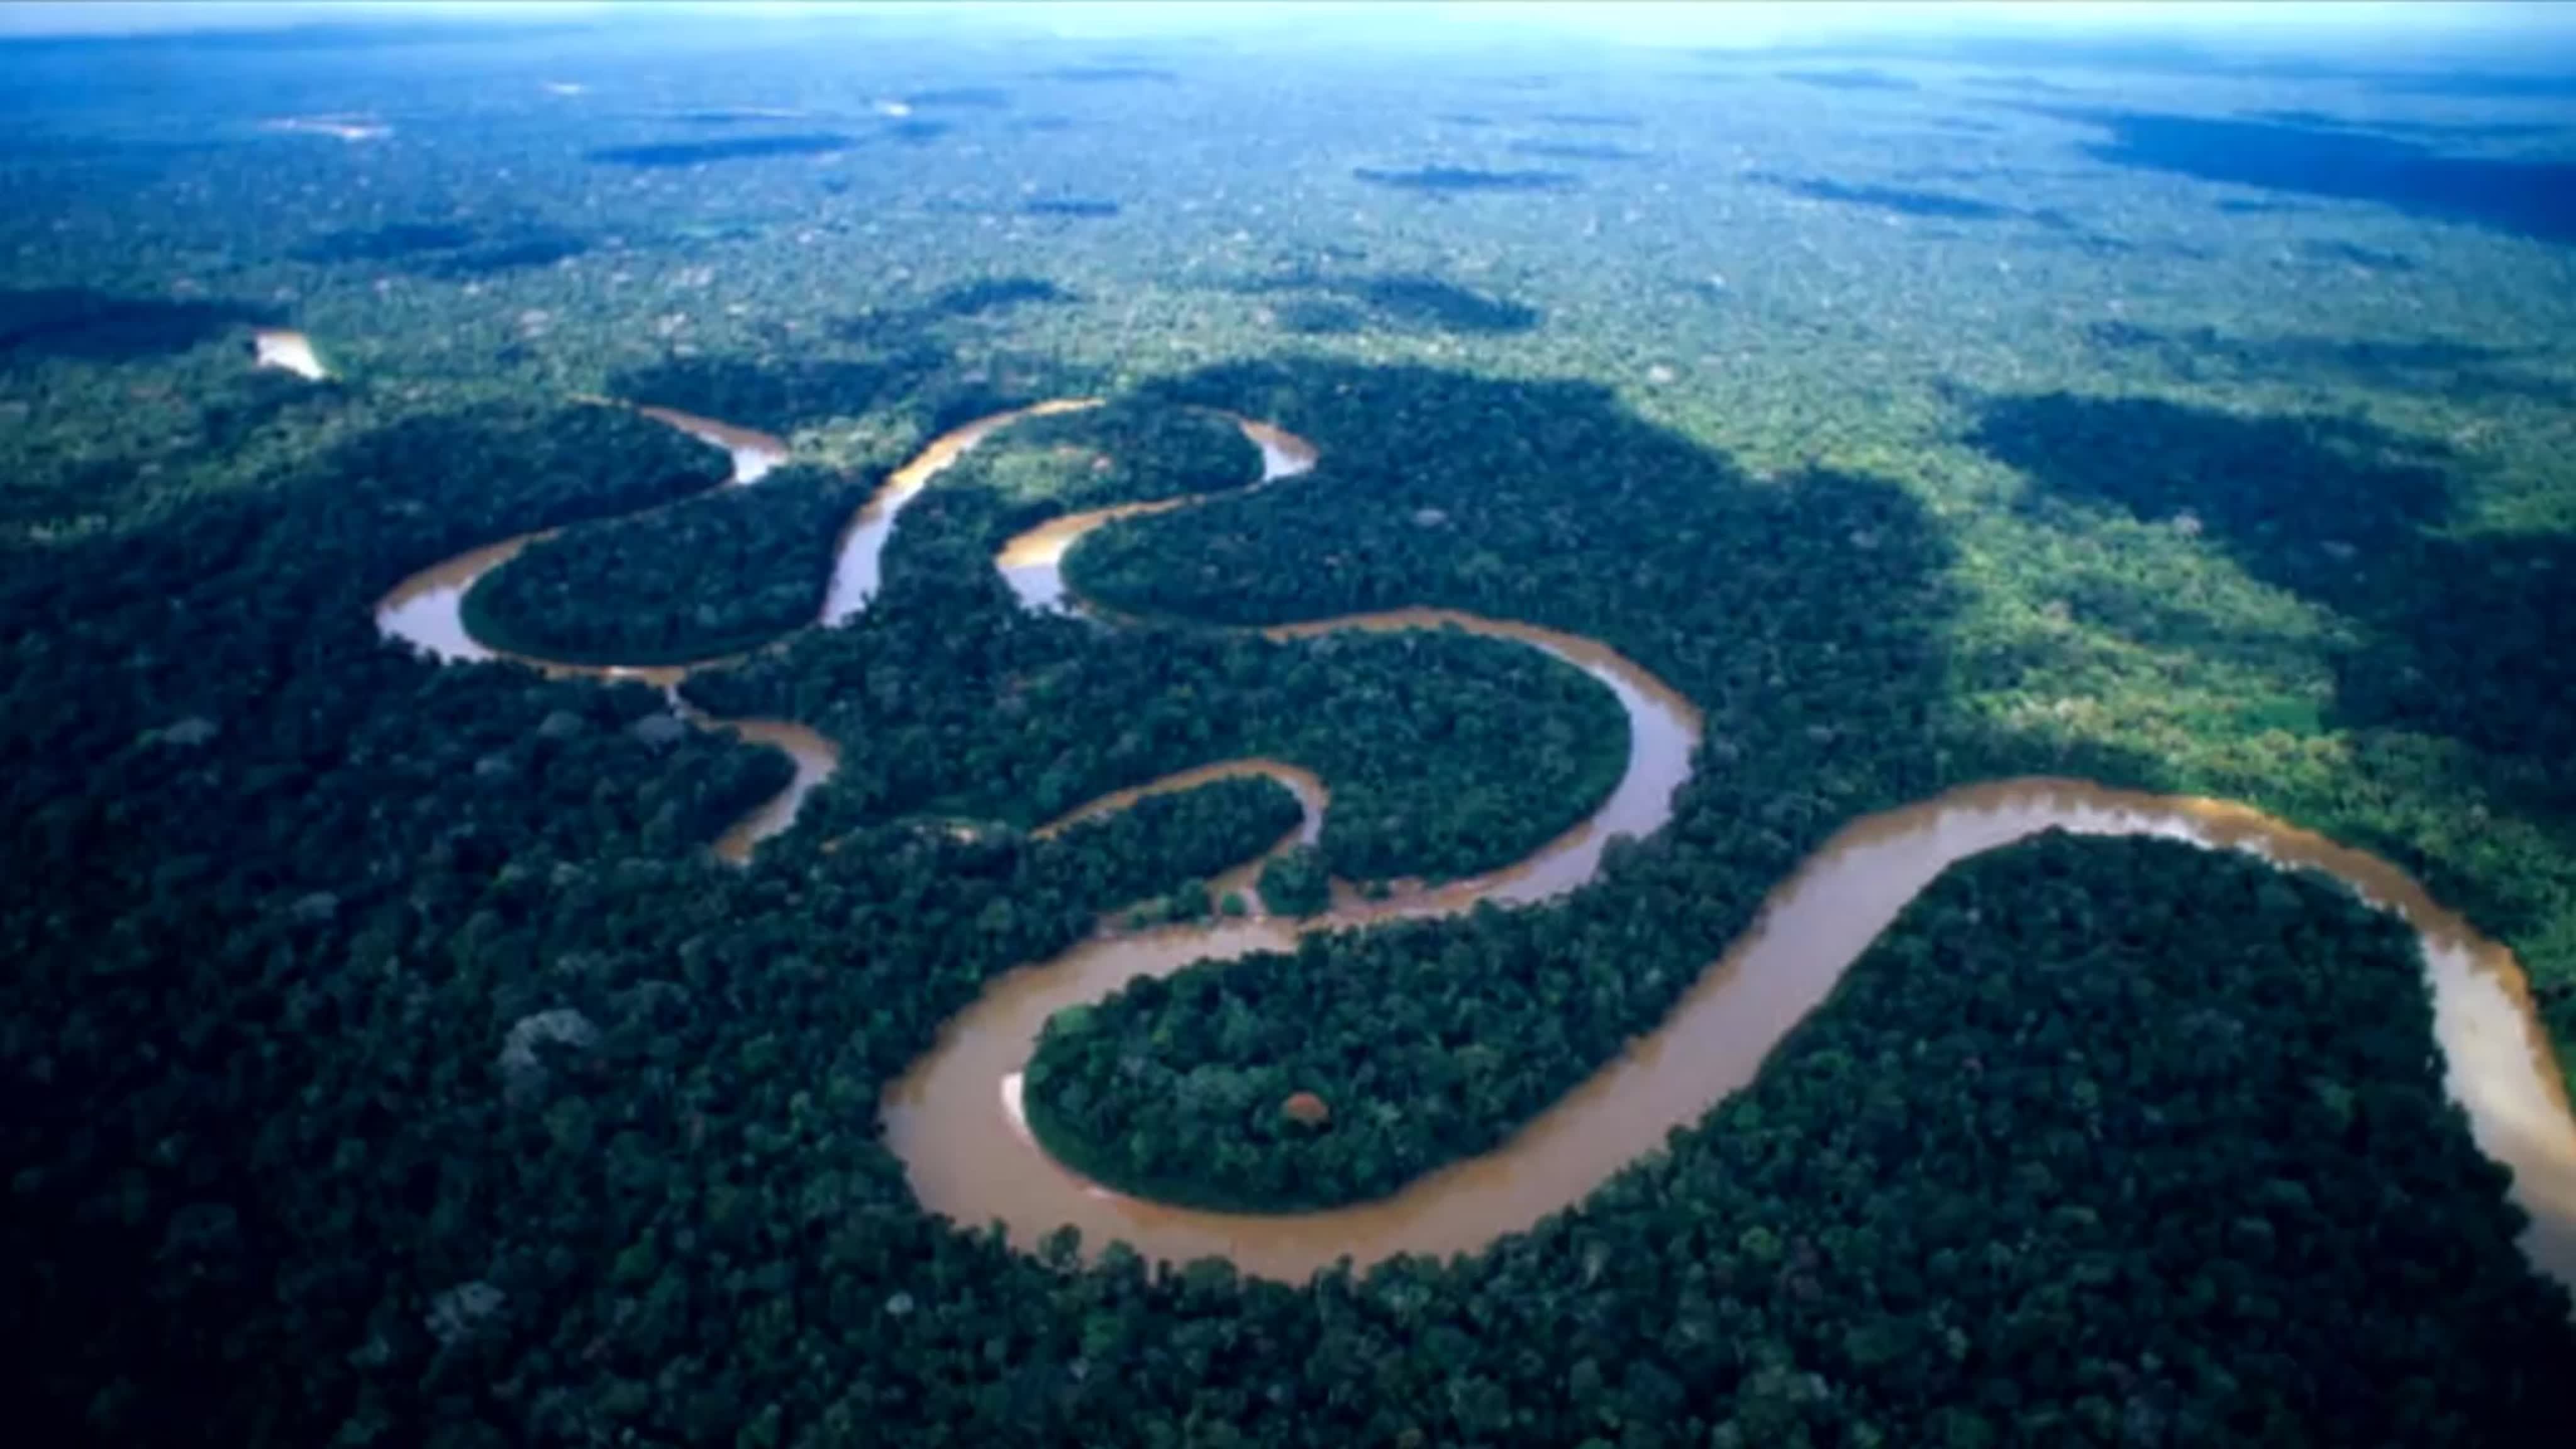 Амазонка полноводна круглый год. Бассейн реки Амазонка. Укаяли река в Южной Америке. Рекорды земли река Амазонка. Амазония Южная Америка.